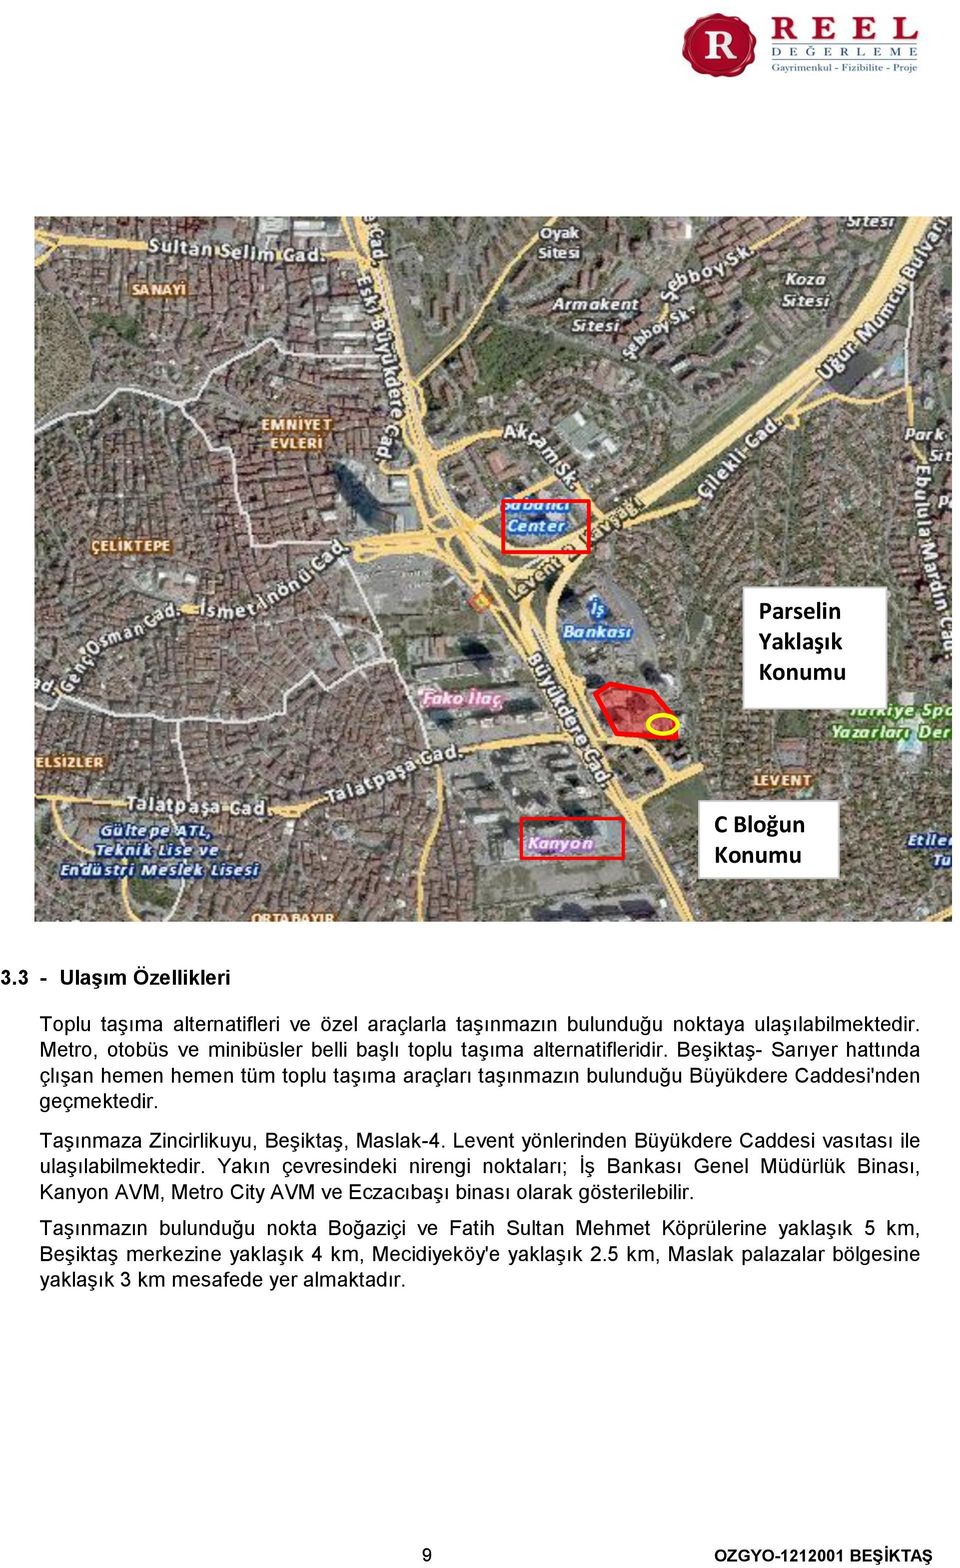 Taşınmaza Zincirlikuyu, Beşiktaş, Maslak-4. Levent yönlerinden Büyükdere Caddesi vasıtası ile ulaşılabilmektedir.